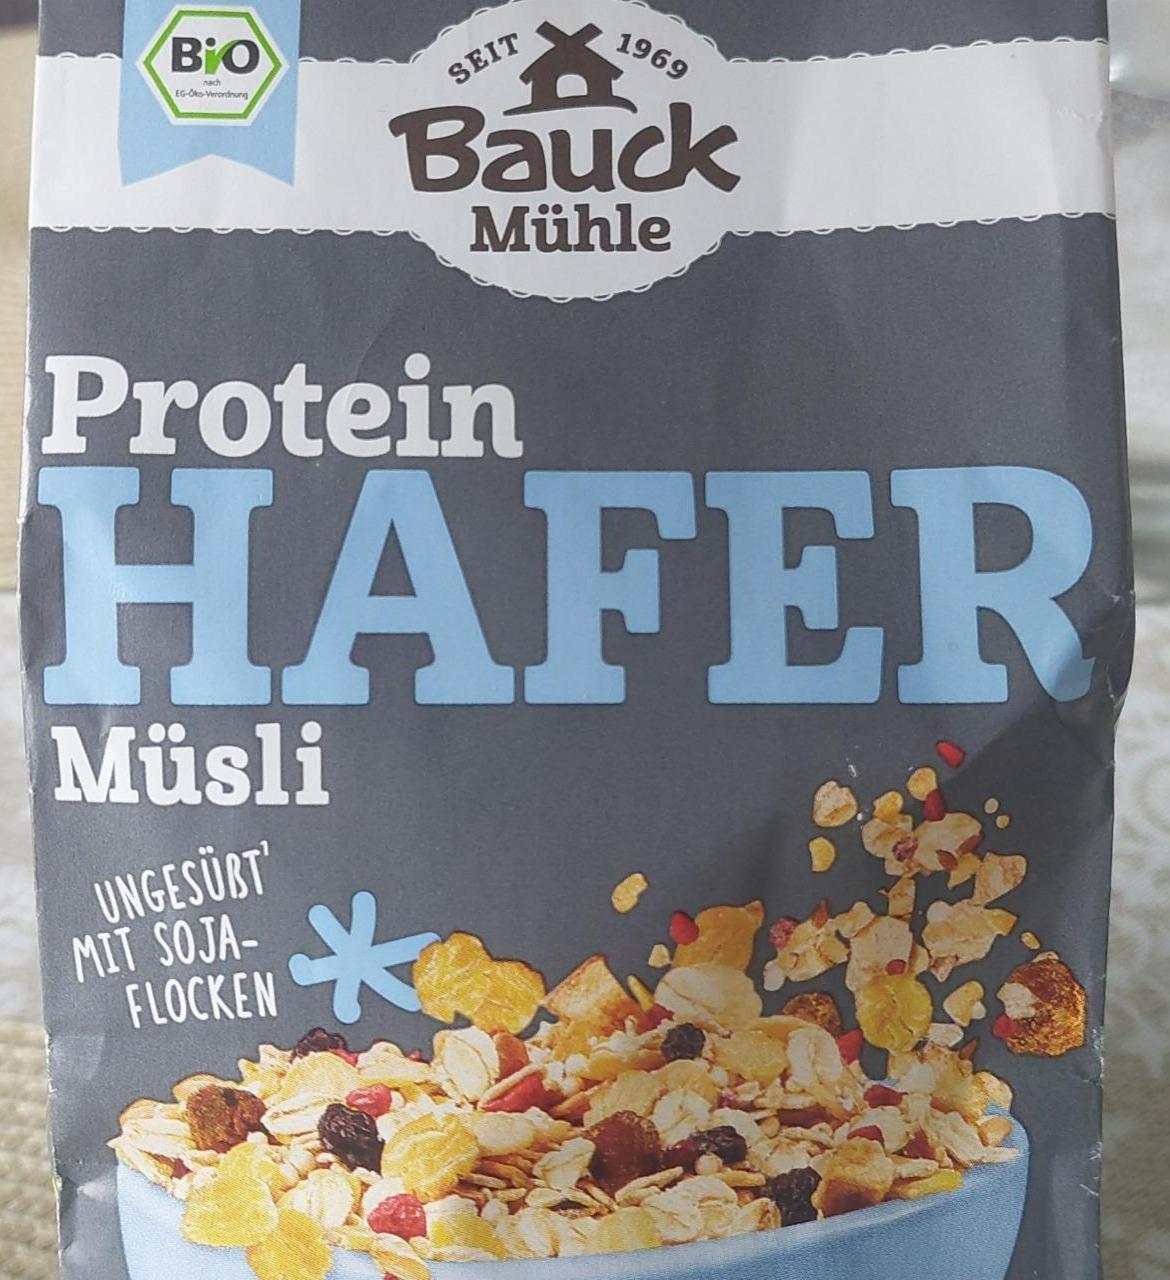 Fotografie - Protein Hafer Müsli Bauck Mühle